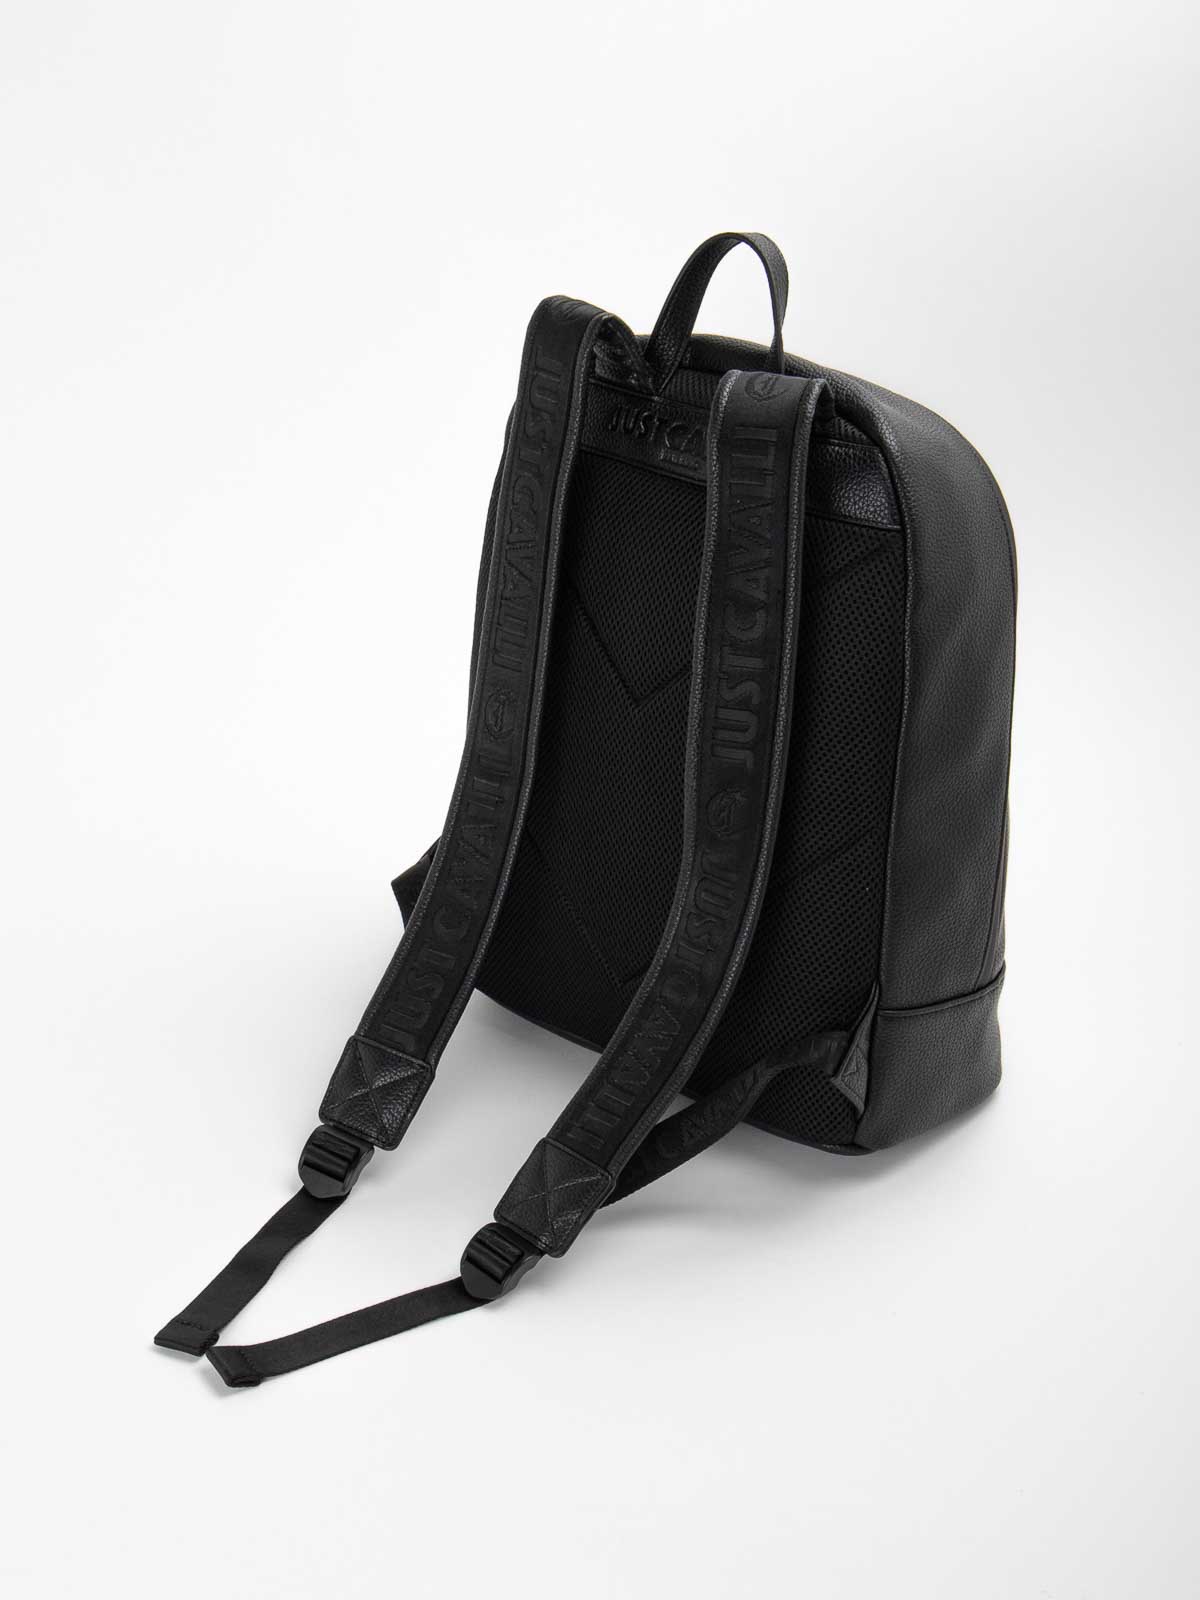 Shop Just Cavalli Logo Backpack In Black